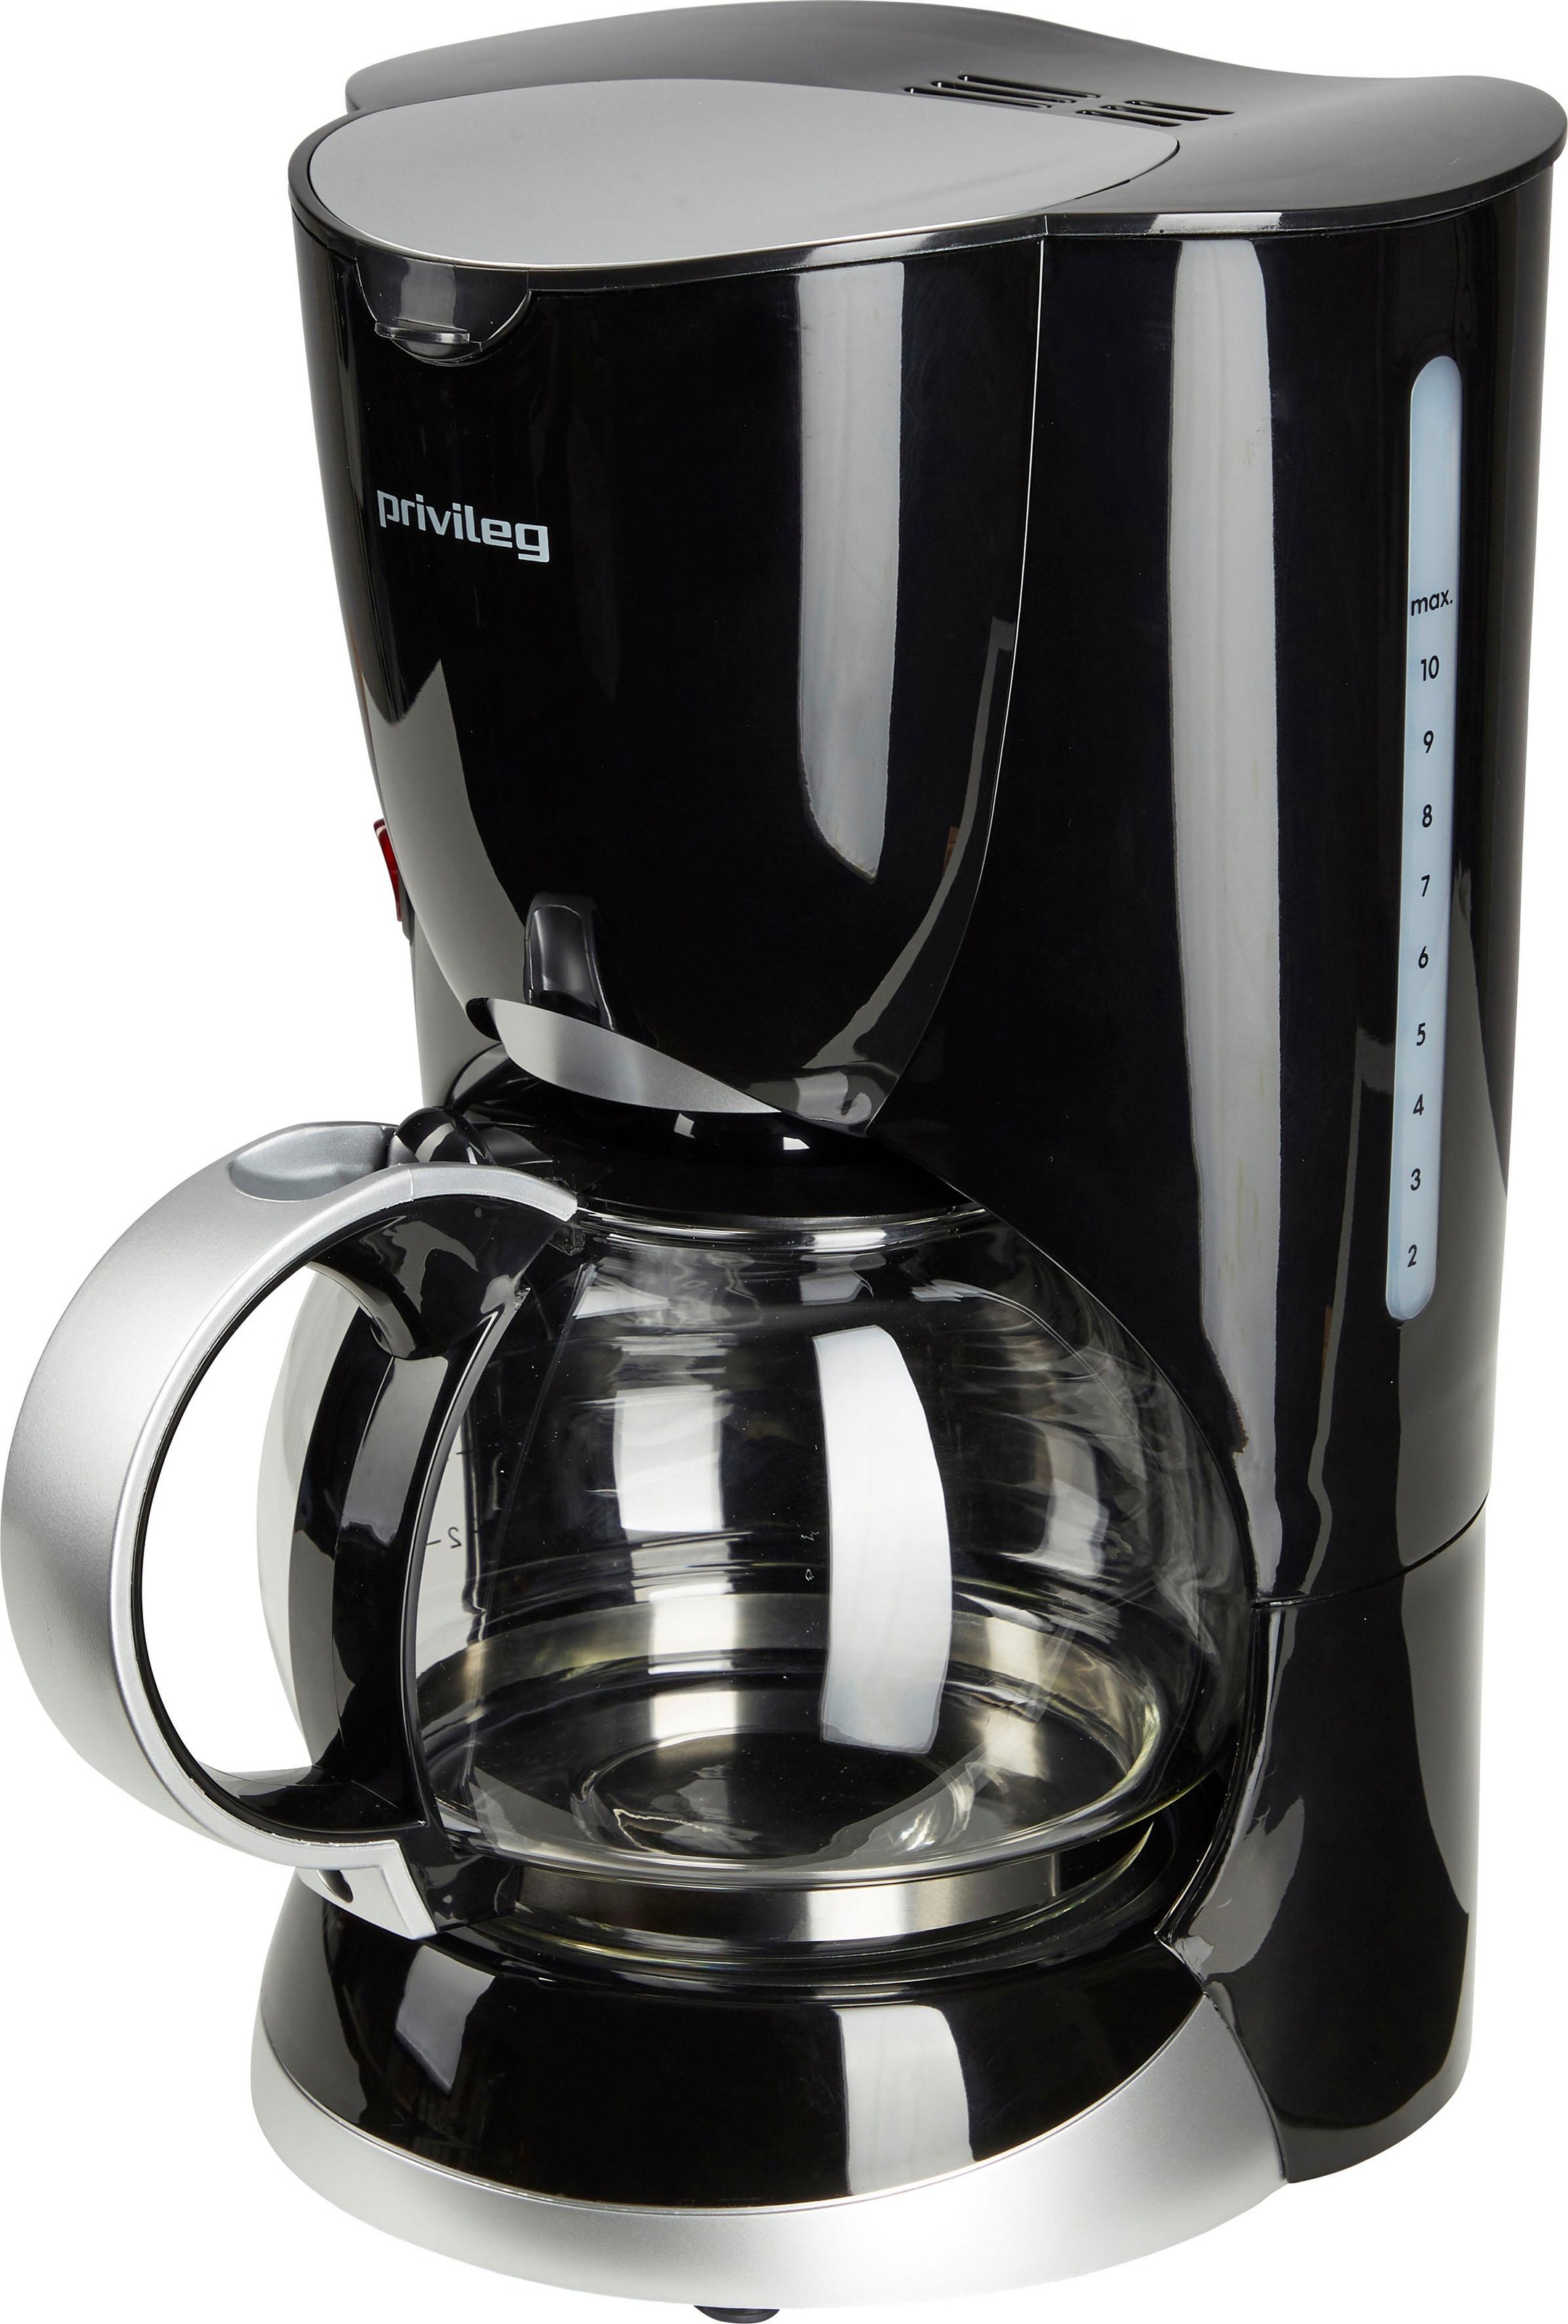 Privileg Filterkaffeemaschine »Max. 1080 Watt«, 1,37 l Kaffeekanne,  Papierfilter, 1x4, schwarz jetzt im OTTO Online Shop